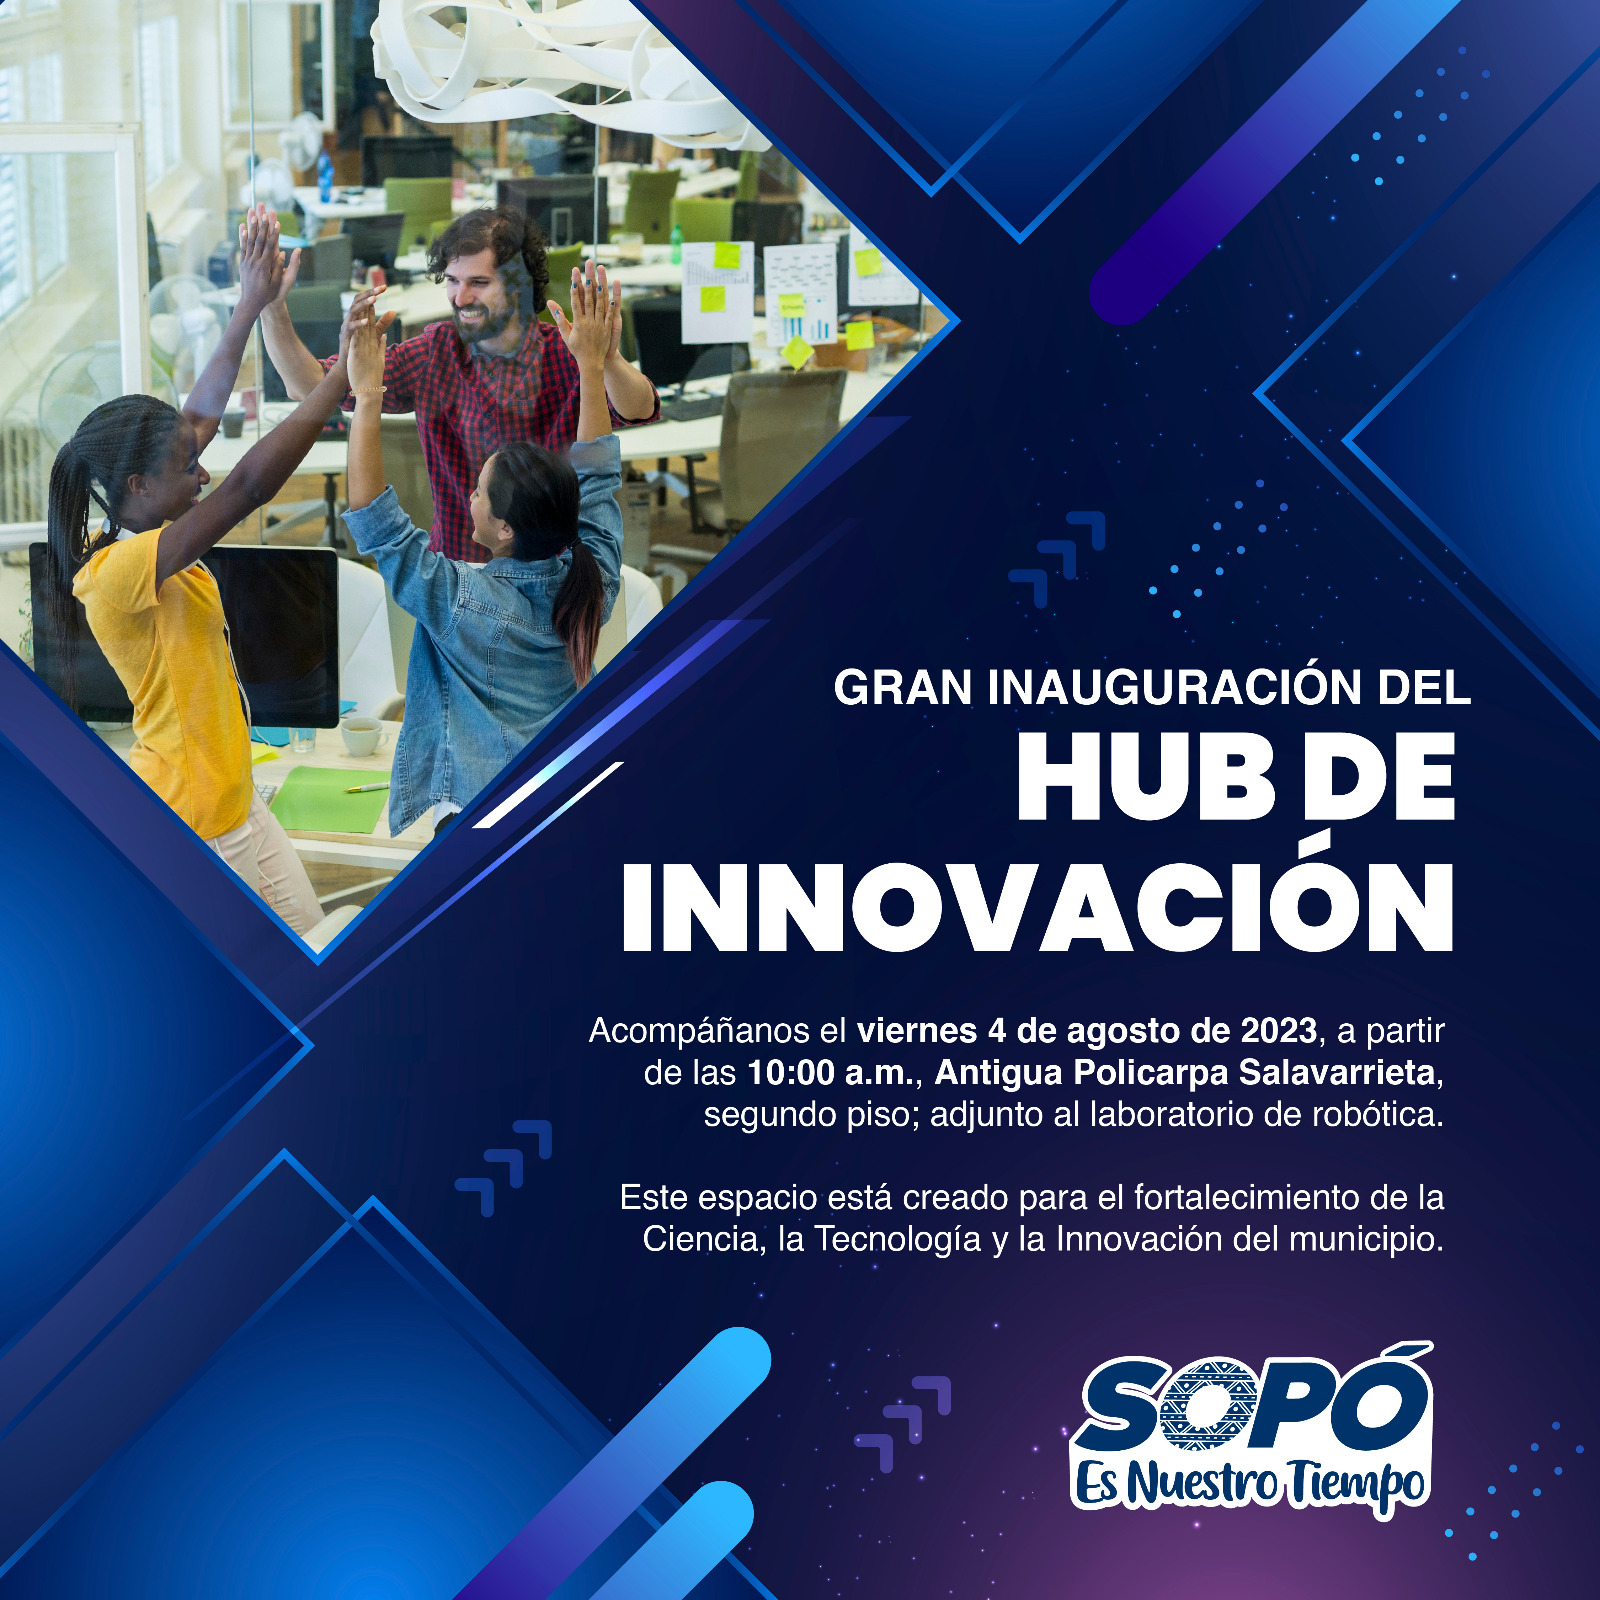 Toda la comunidad cordialmente invitada a la inauguración del Hub de Innovación